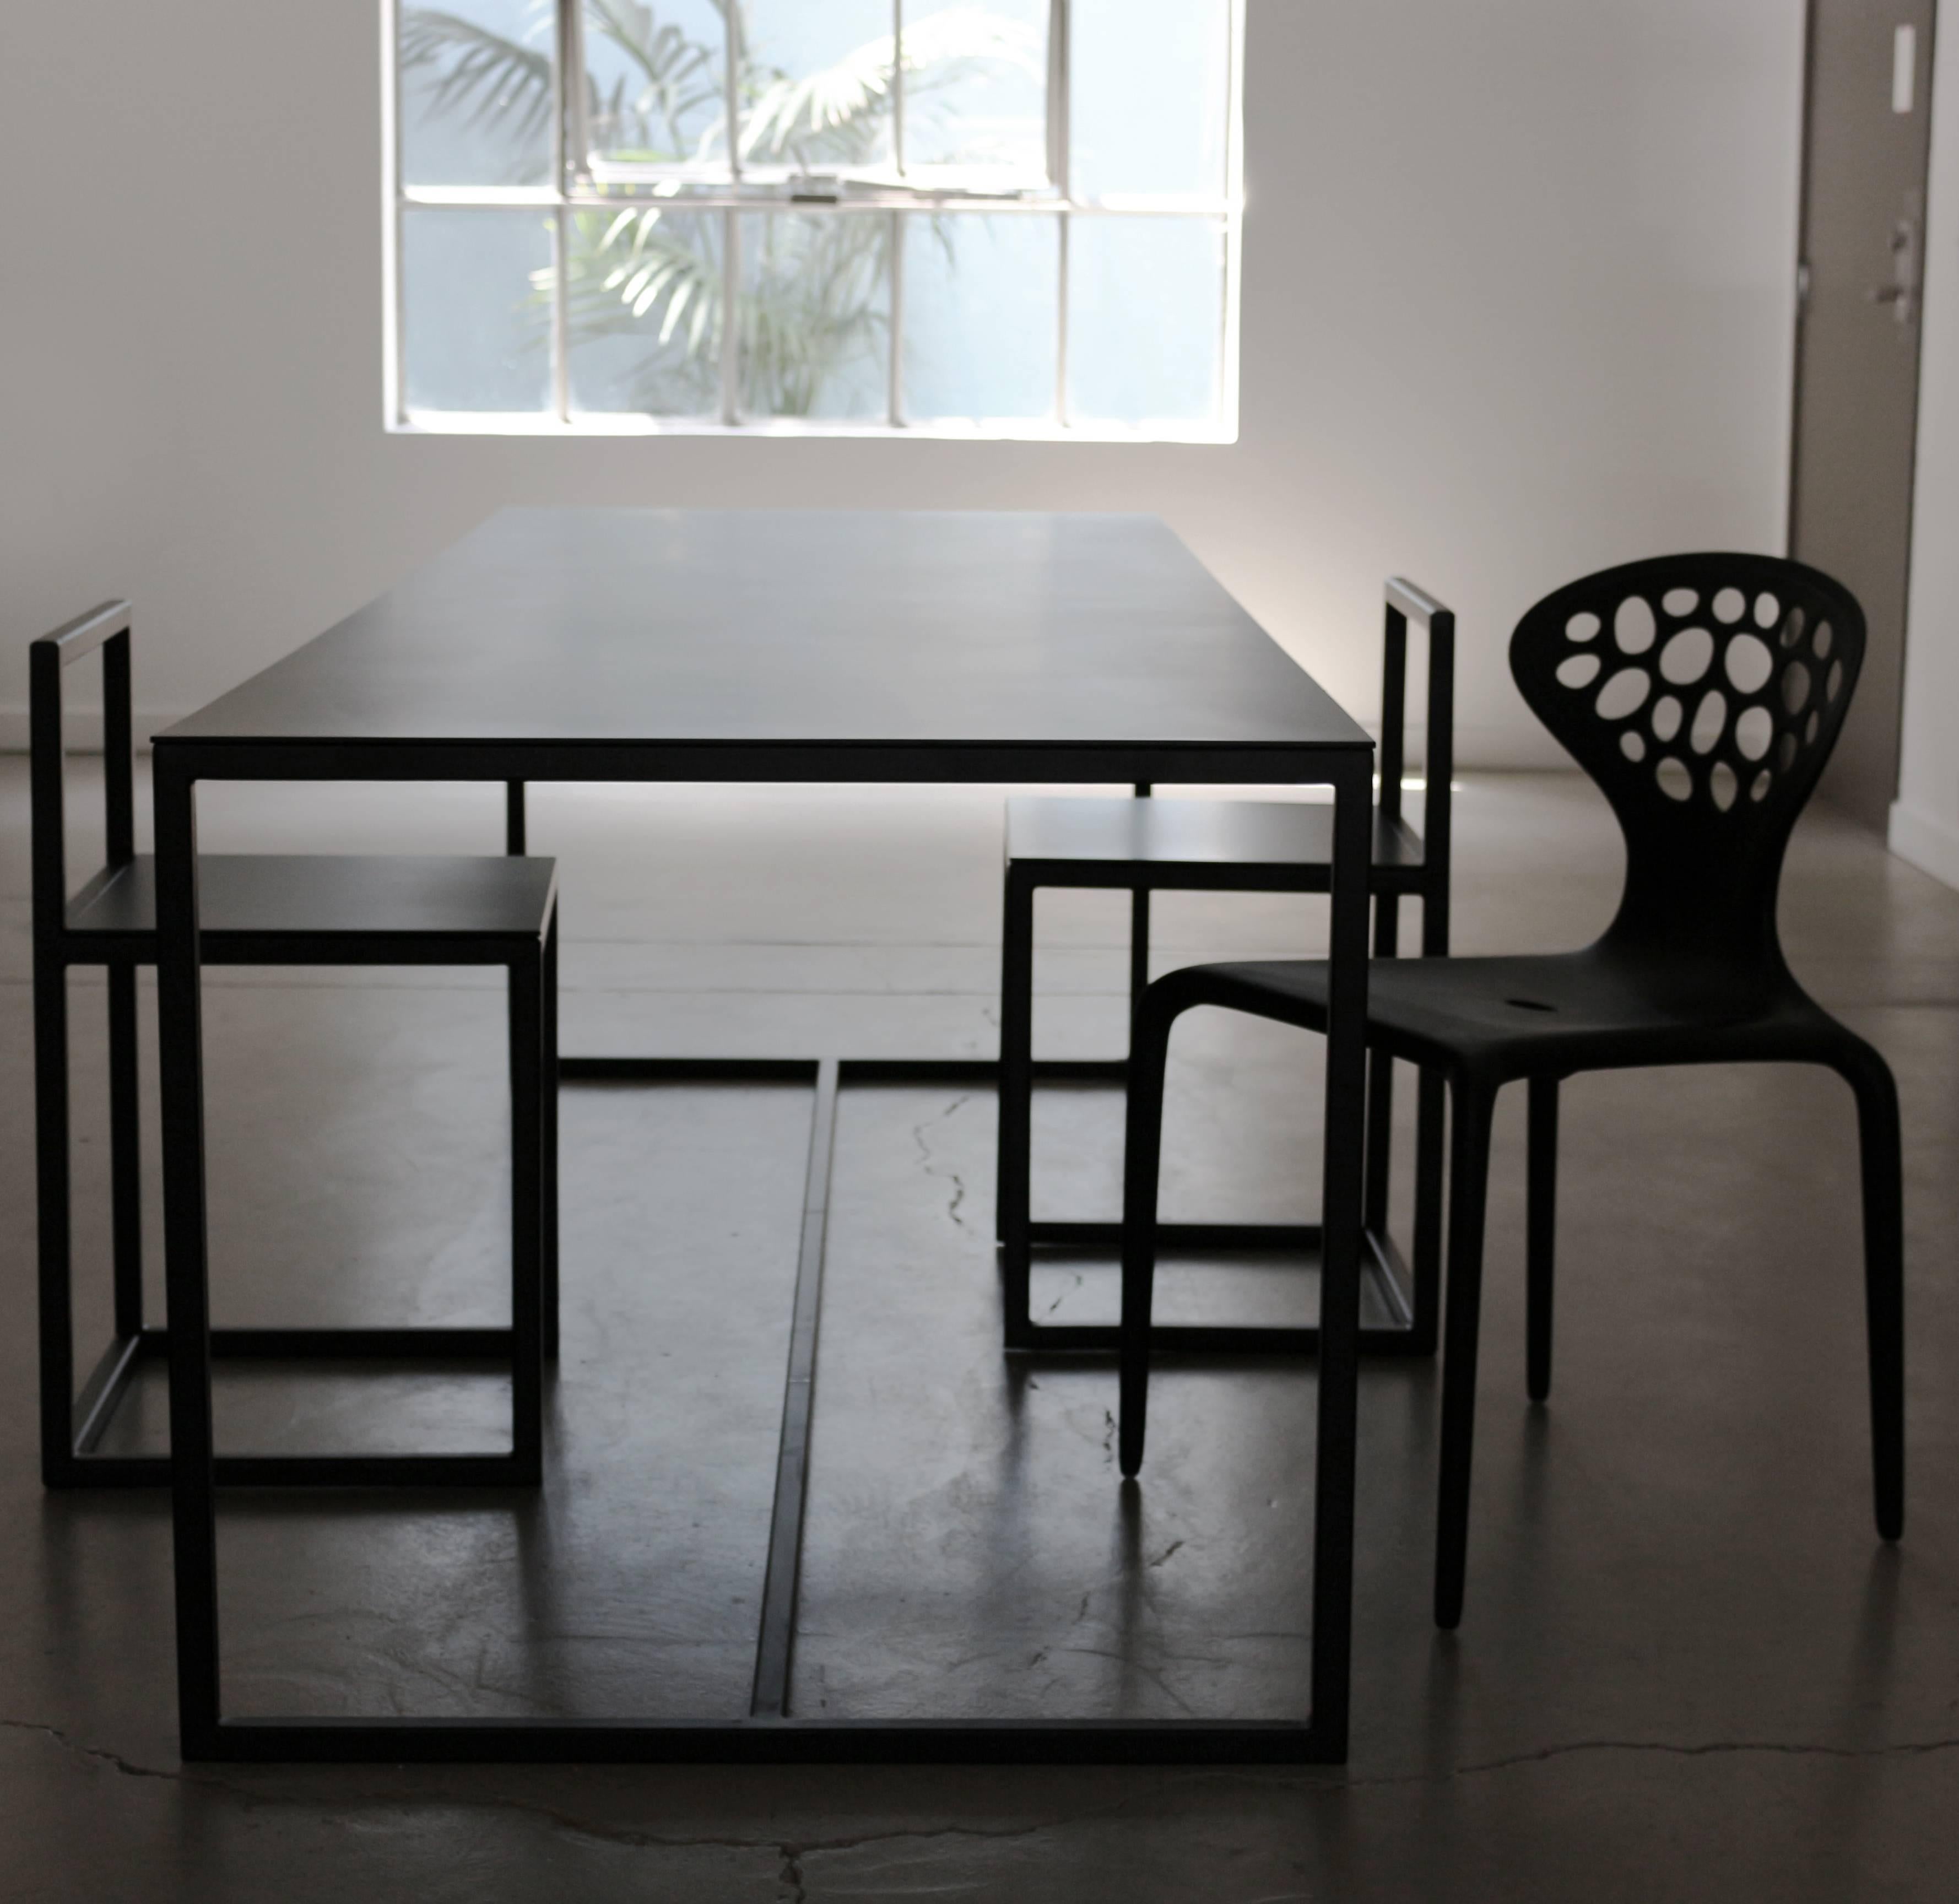 Portuguese SUPERMETAL Table Designed by Chiara Ferrari For Sale